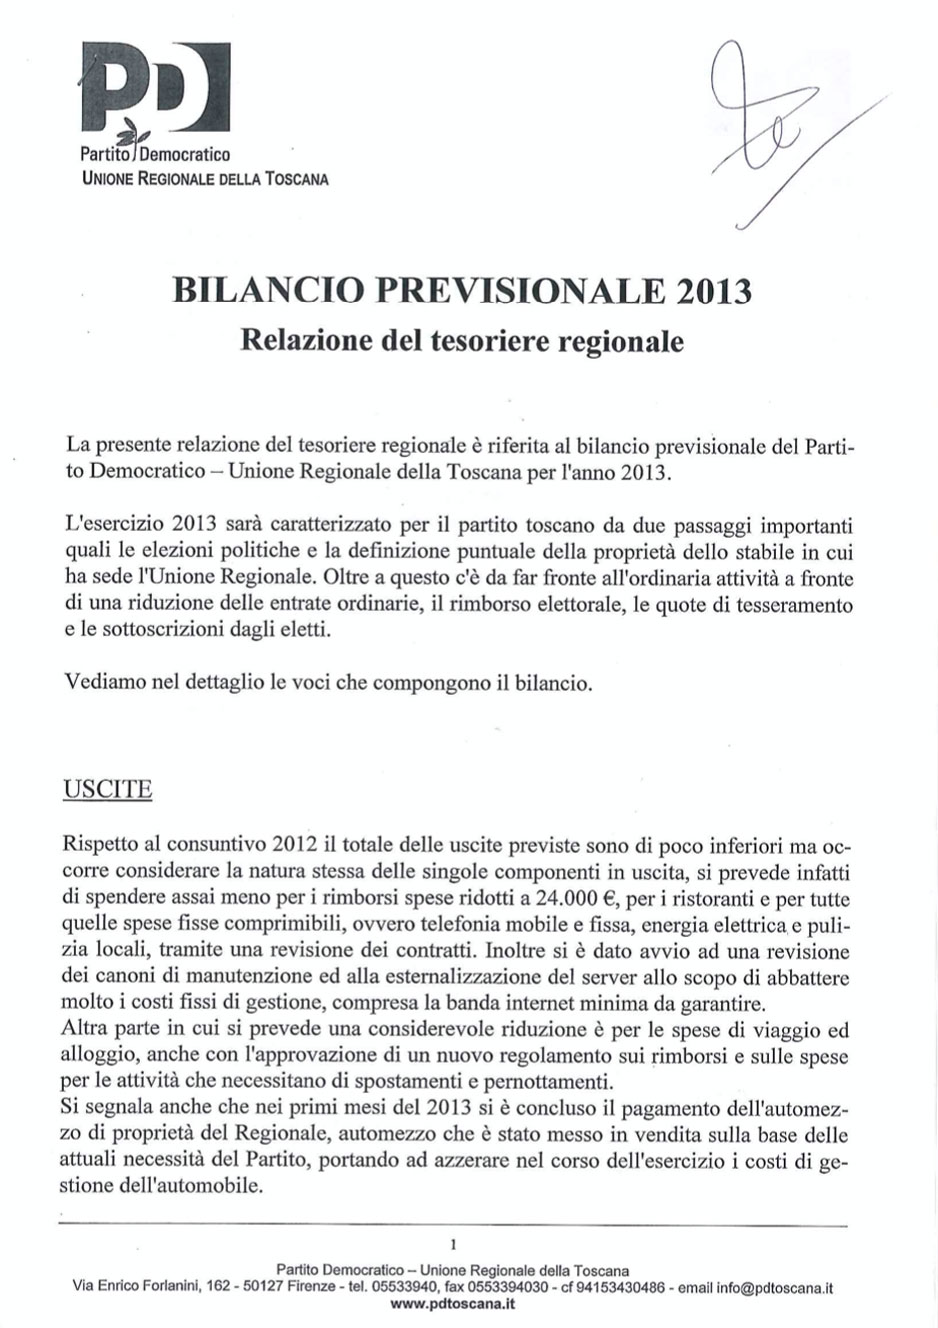 Scarica il Bilancio preventivo 2013 PD Toscana firmato